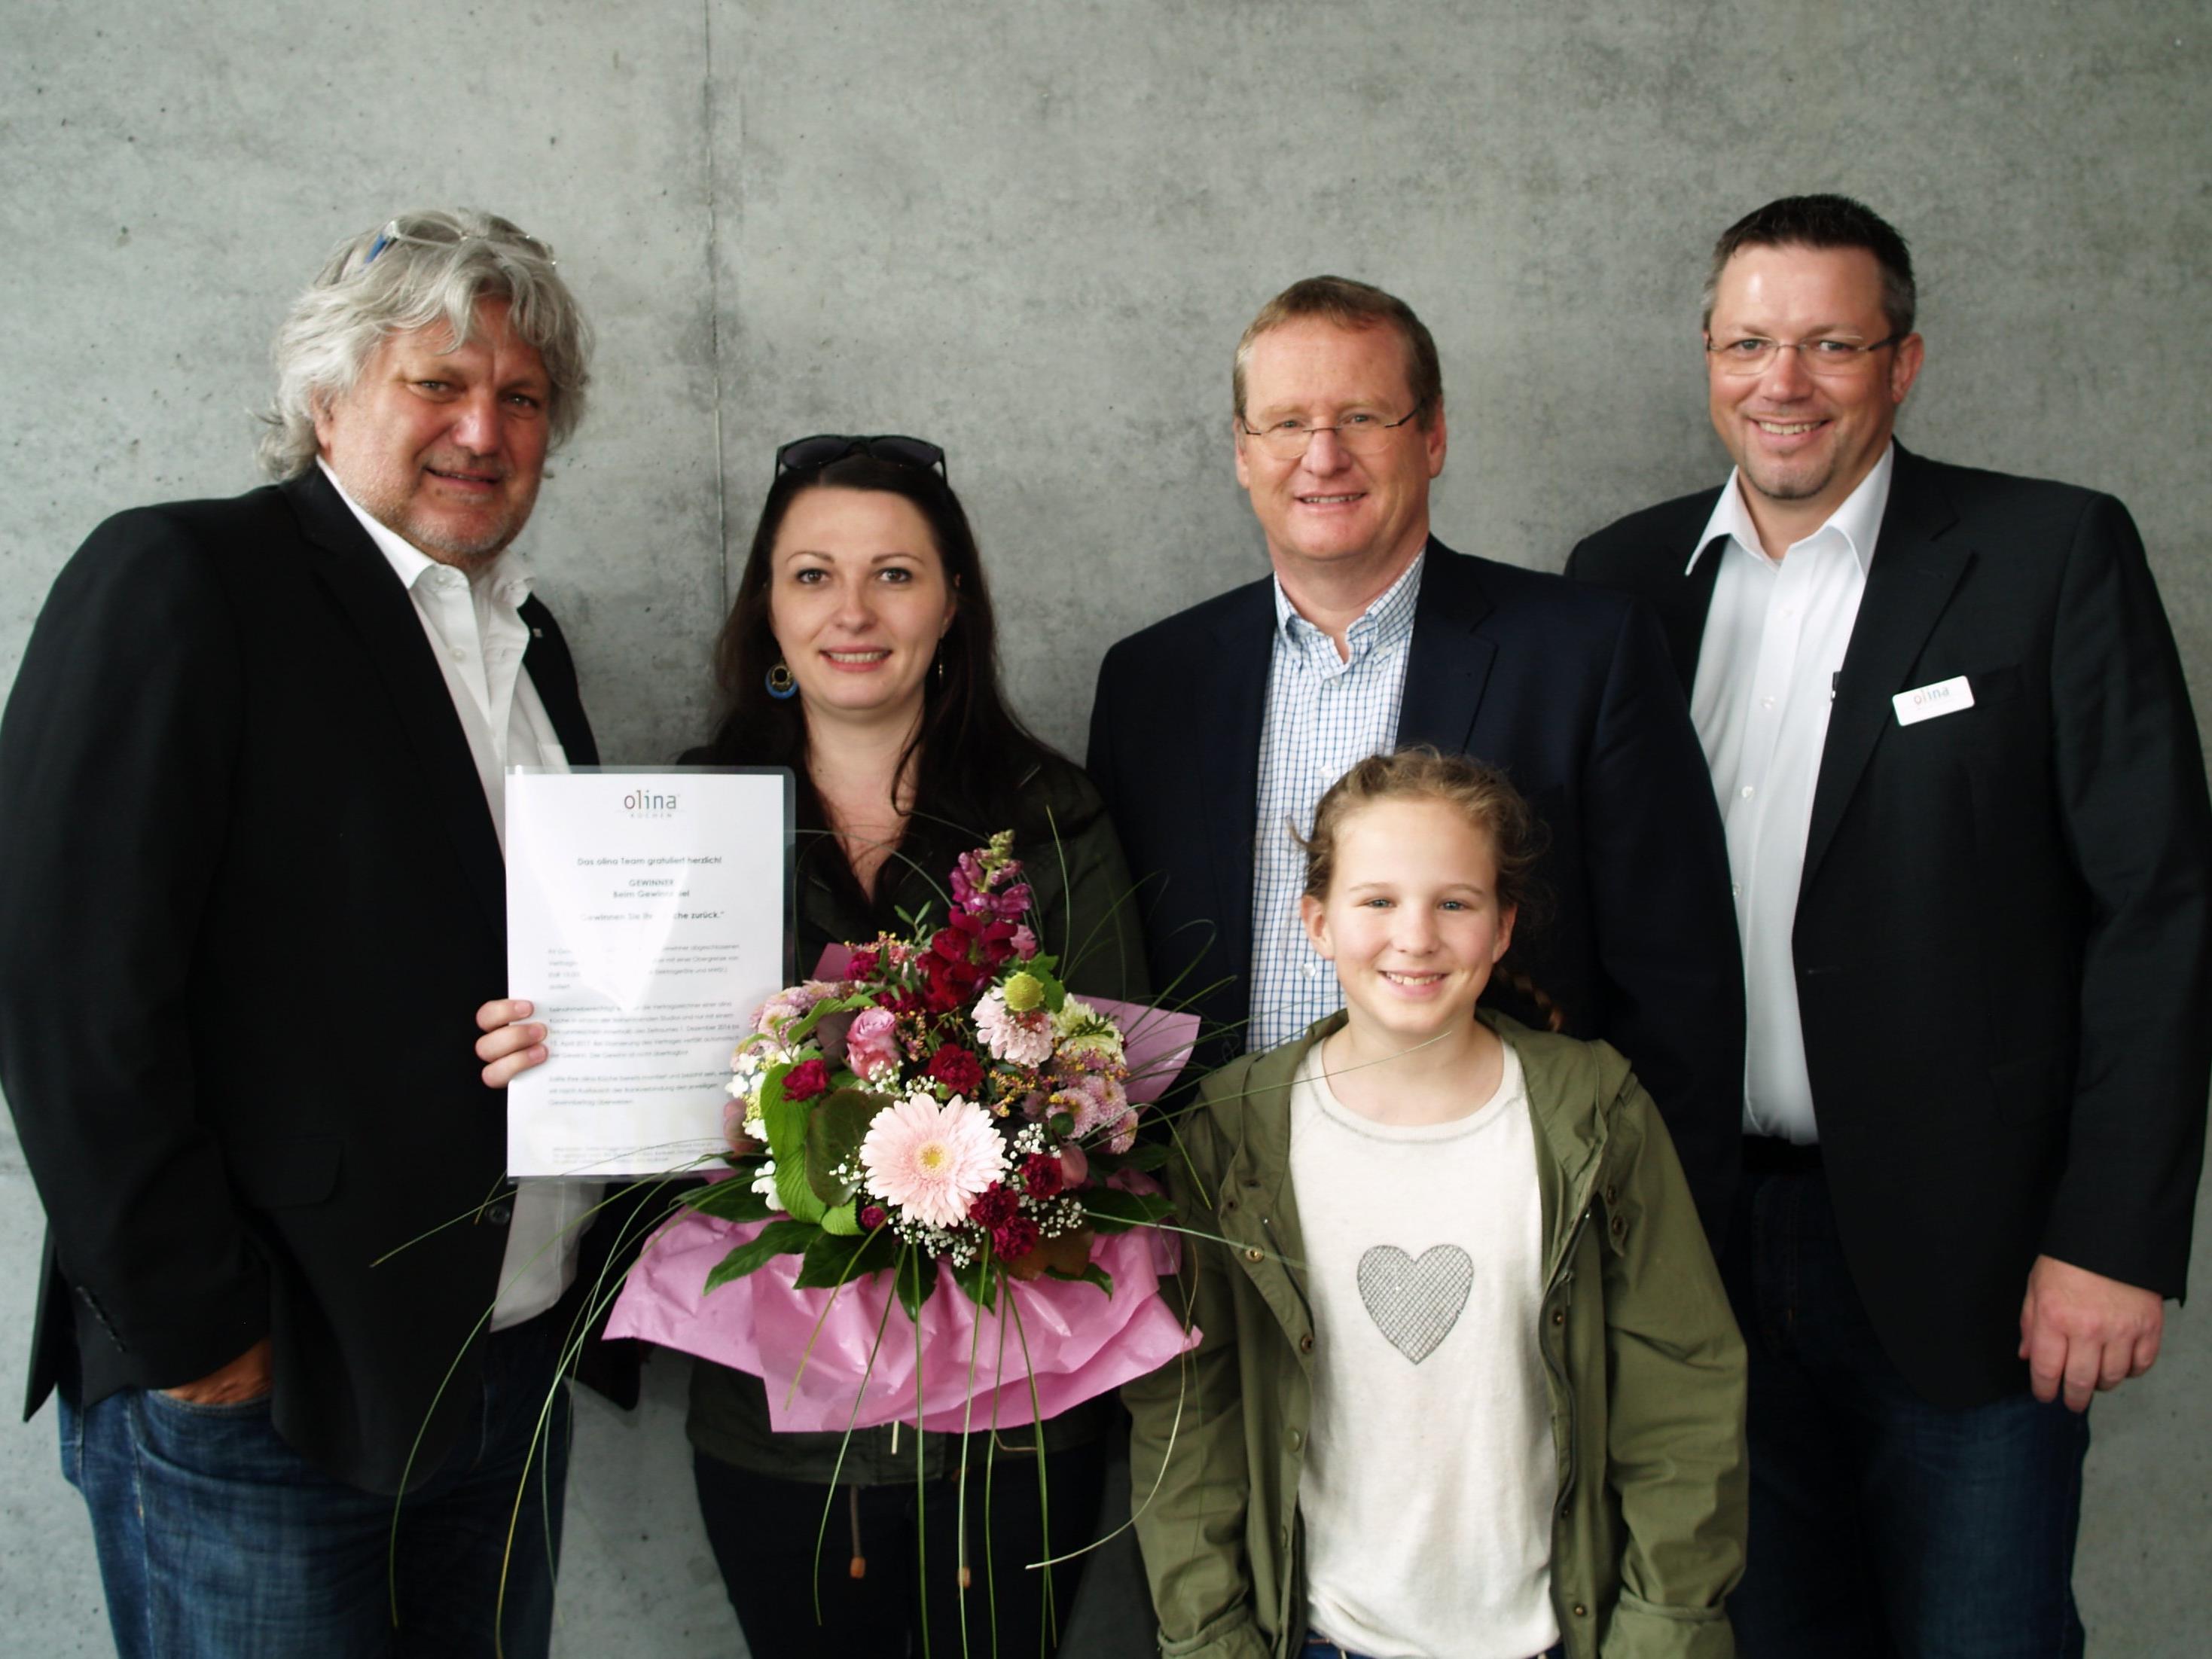 Gewinnerin Tanja Trummer mit "Glücksfee" Lisa, den Inhabern Erwin Dobler und Thomas Prugger, sowie Geschäftsführer Markus Tschohl